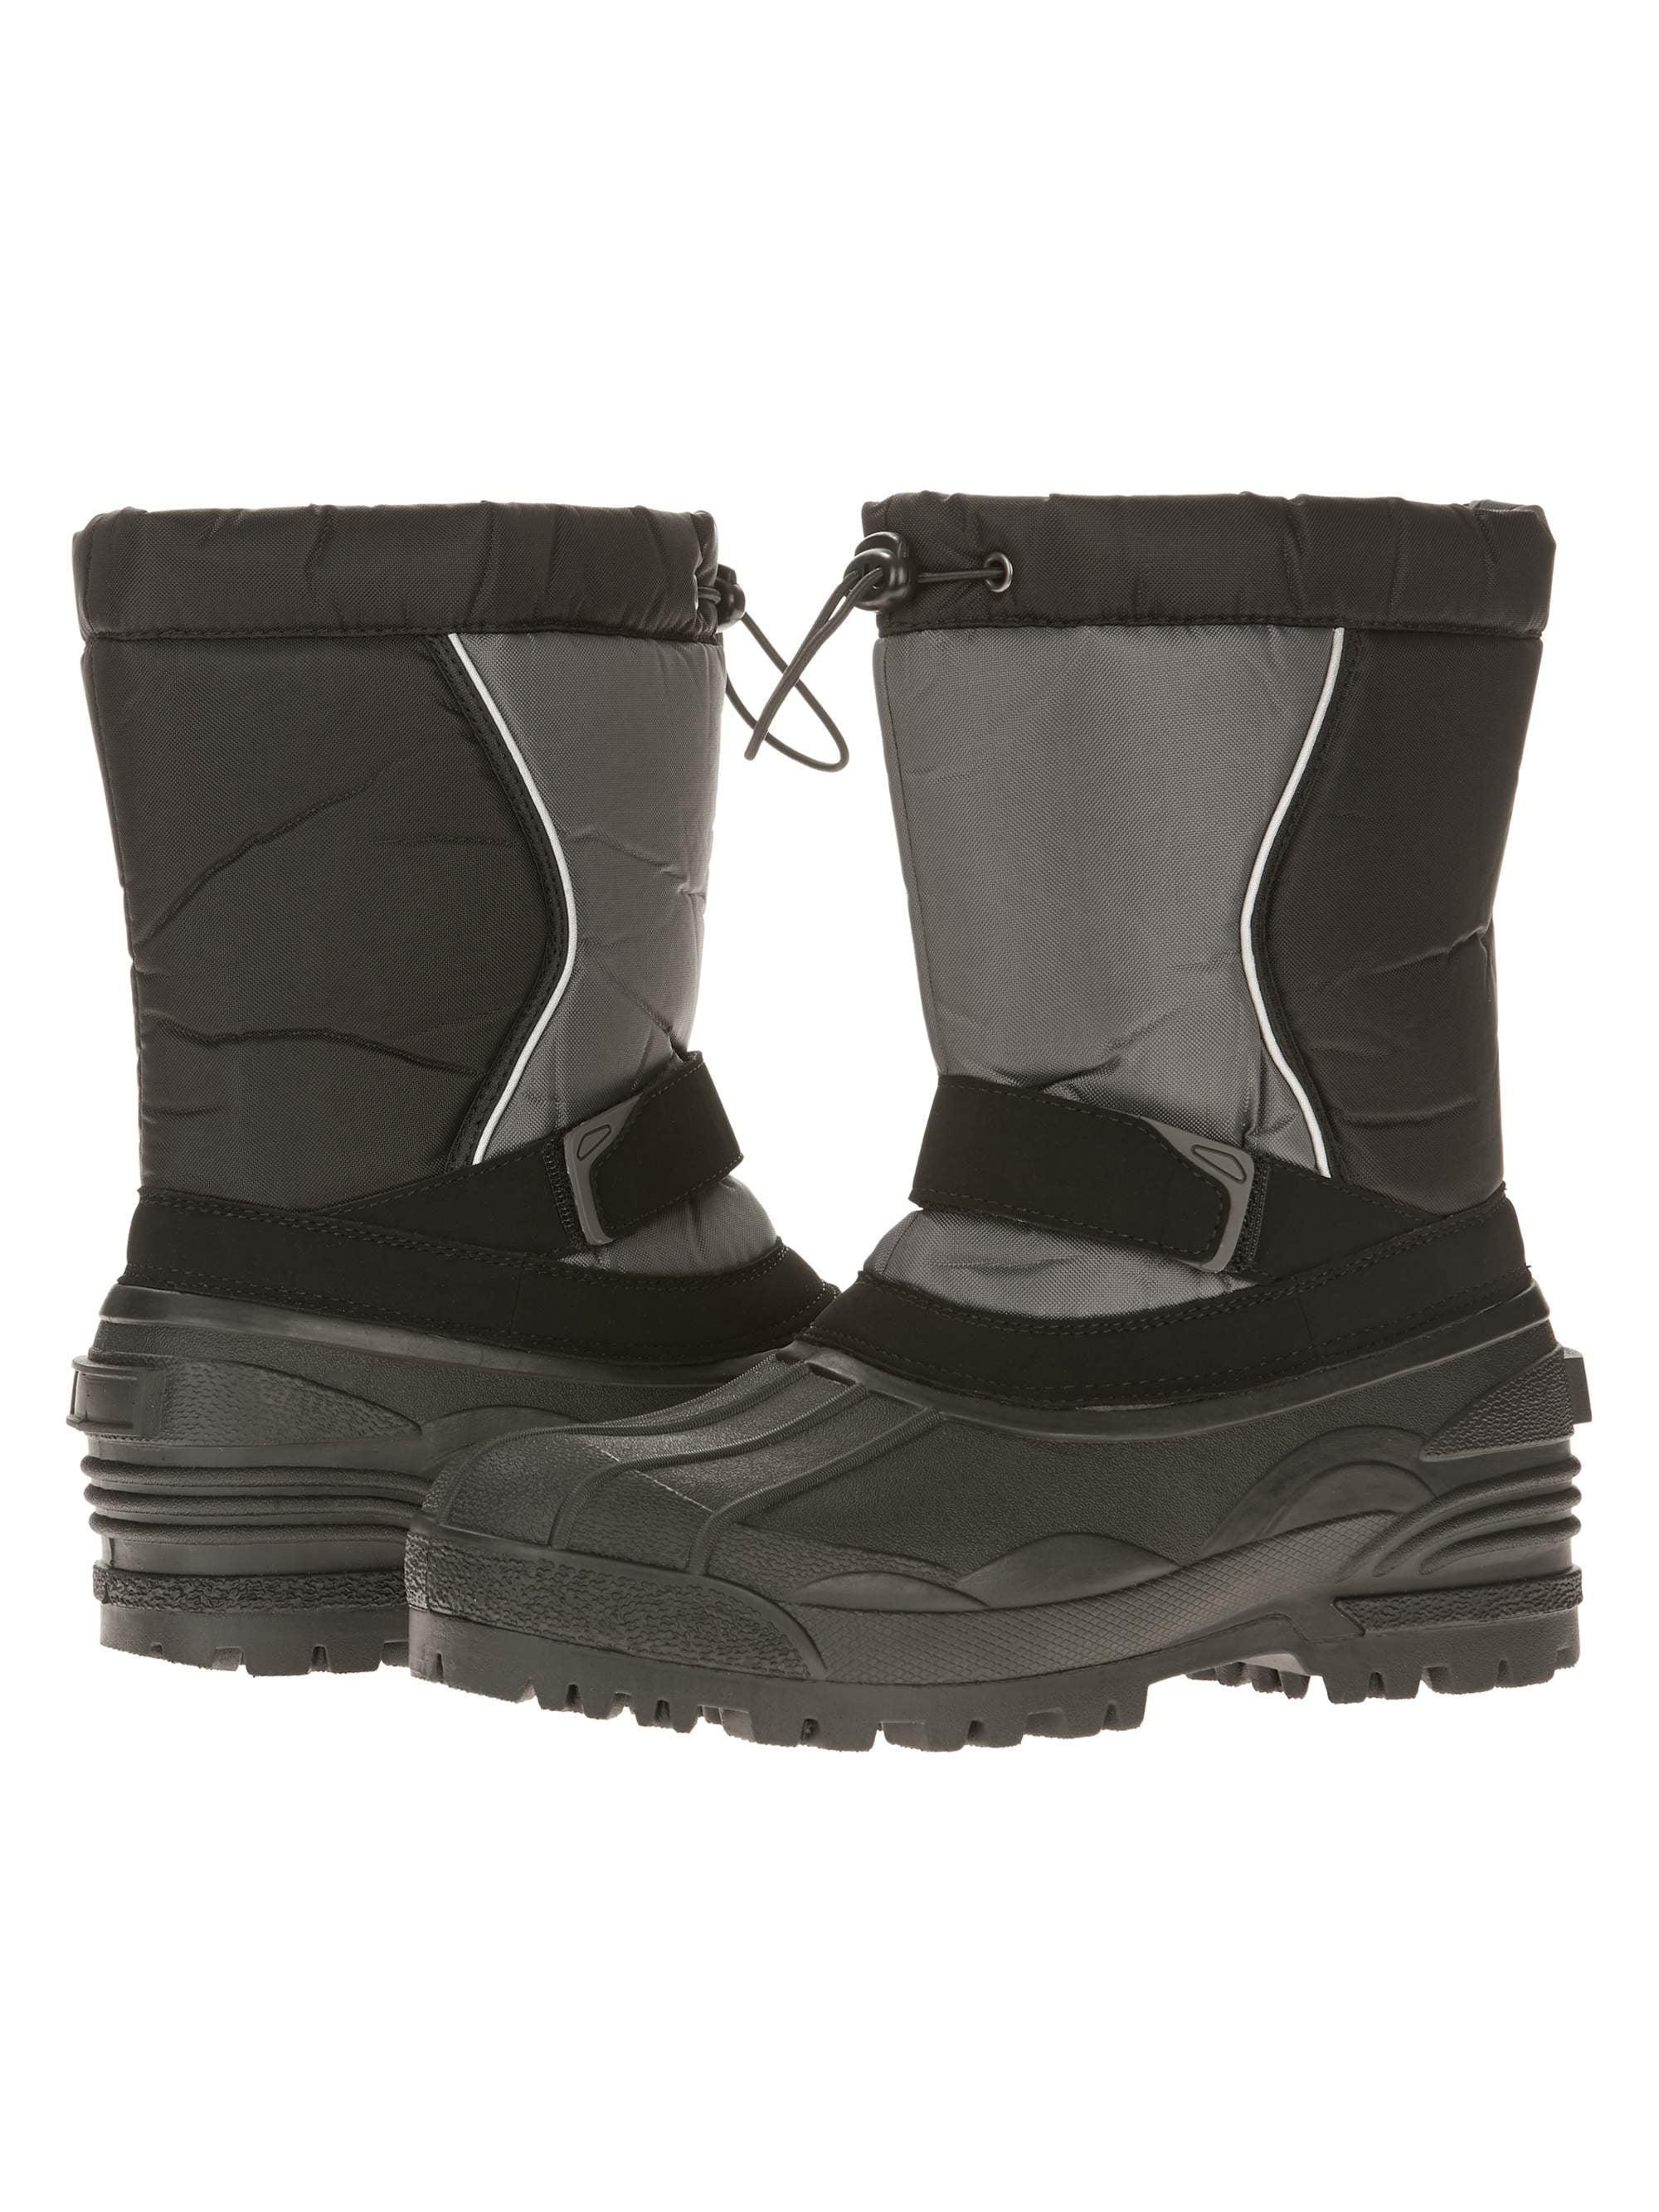 walmart winter boots